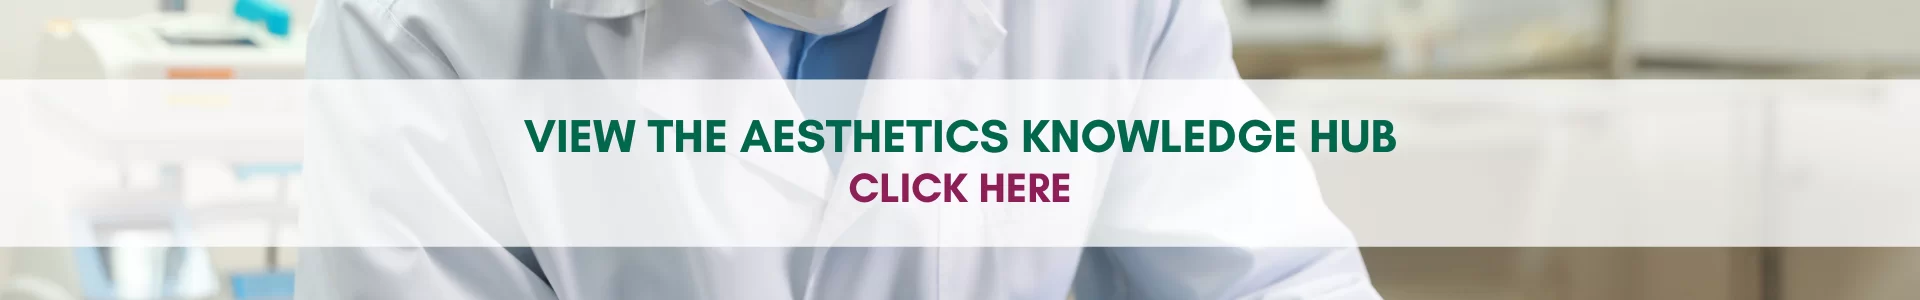 Aesthetics Knowledge Hub Slide